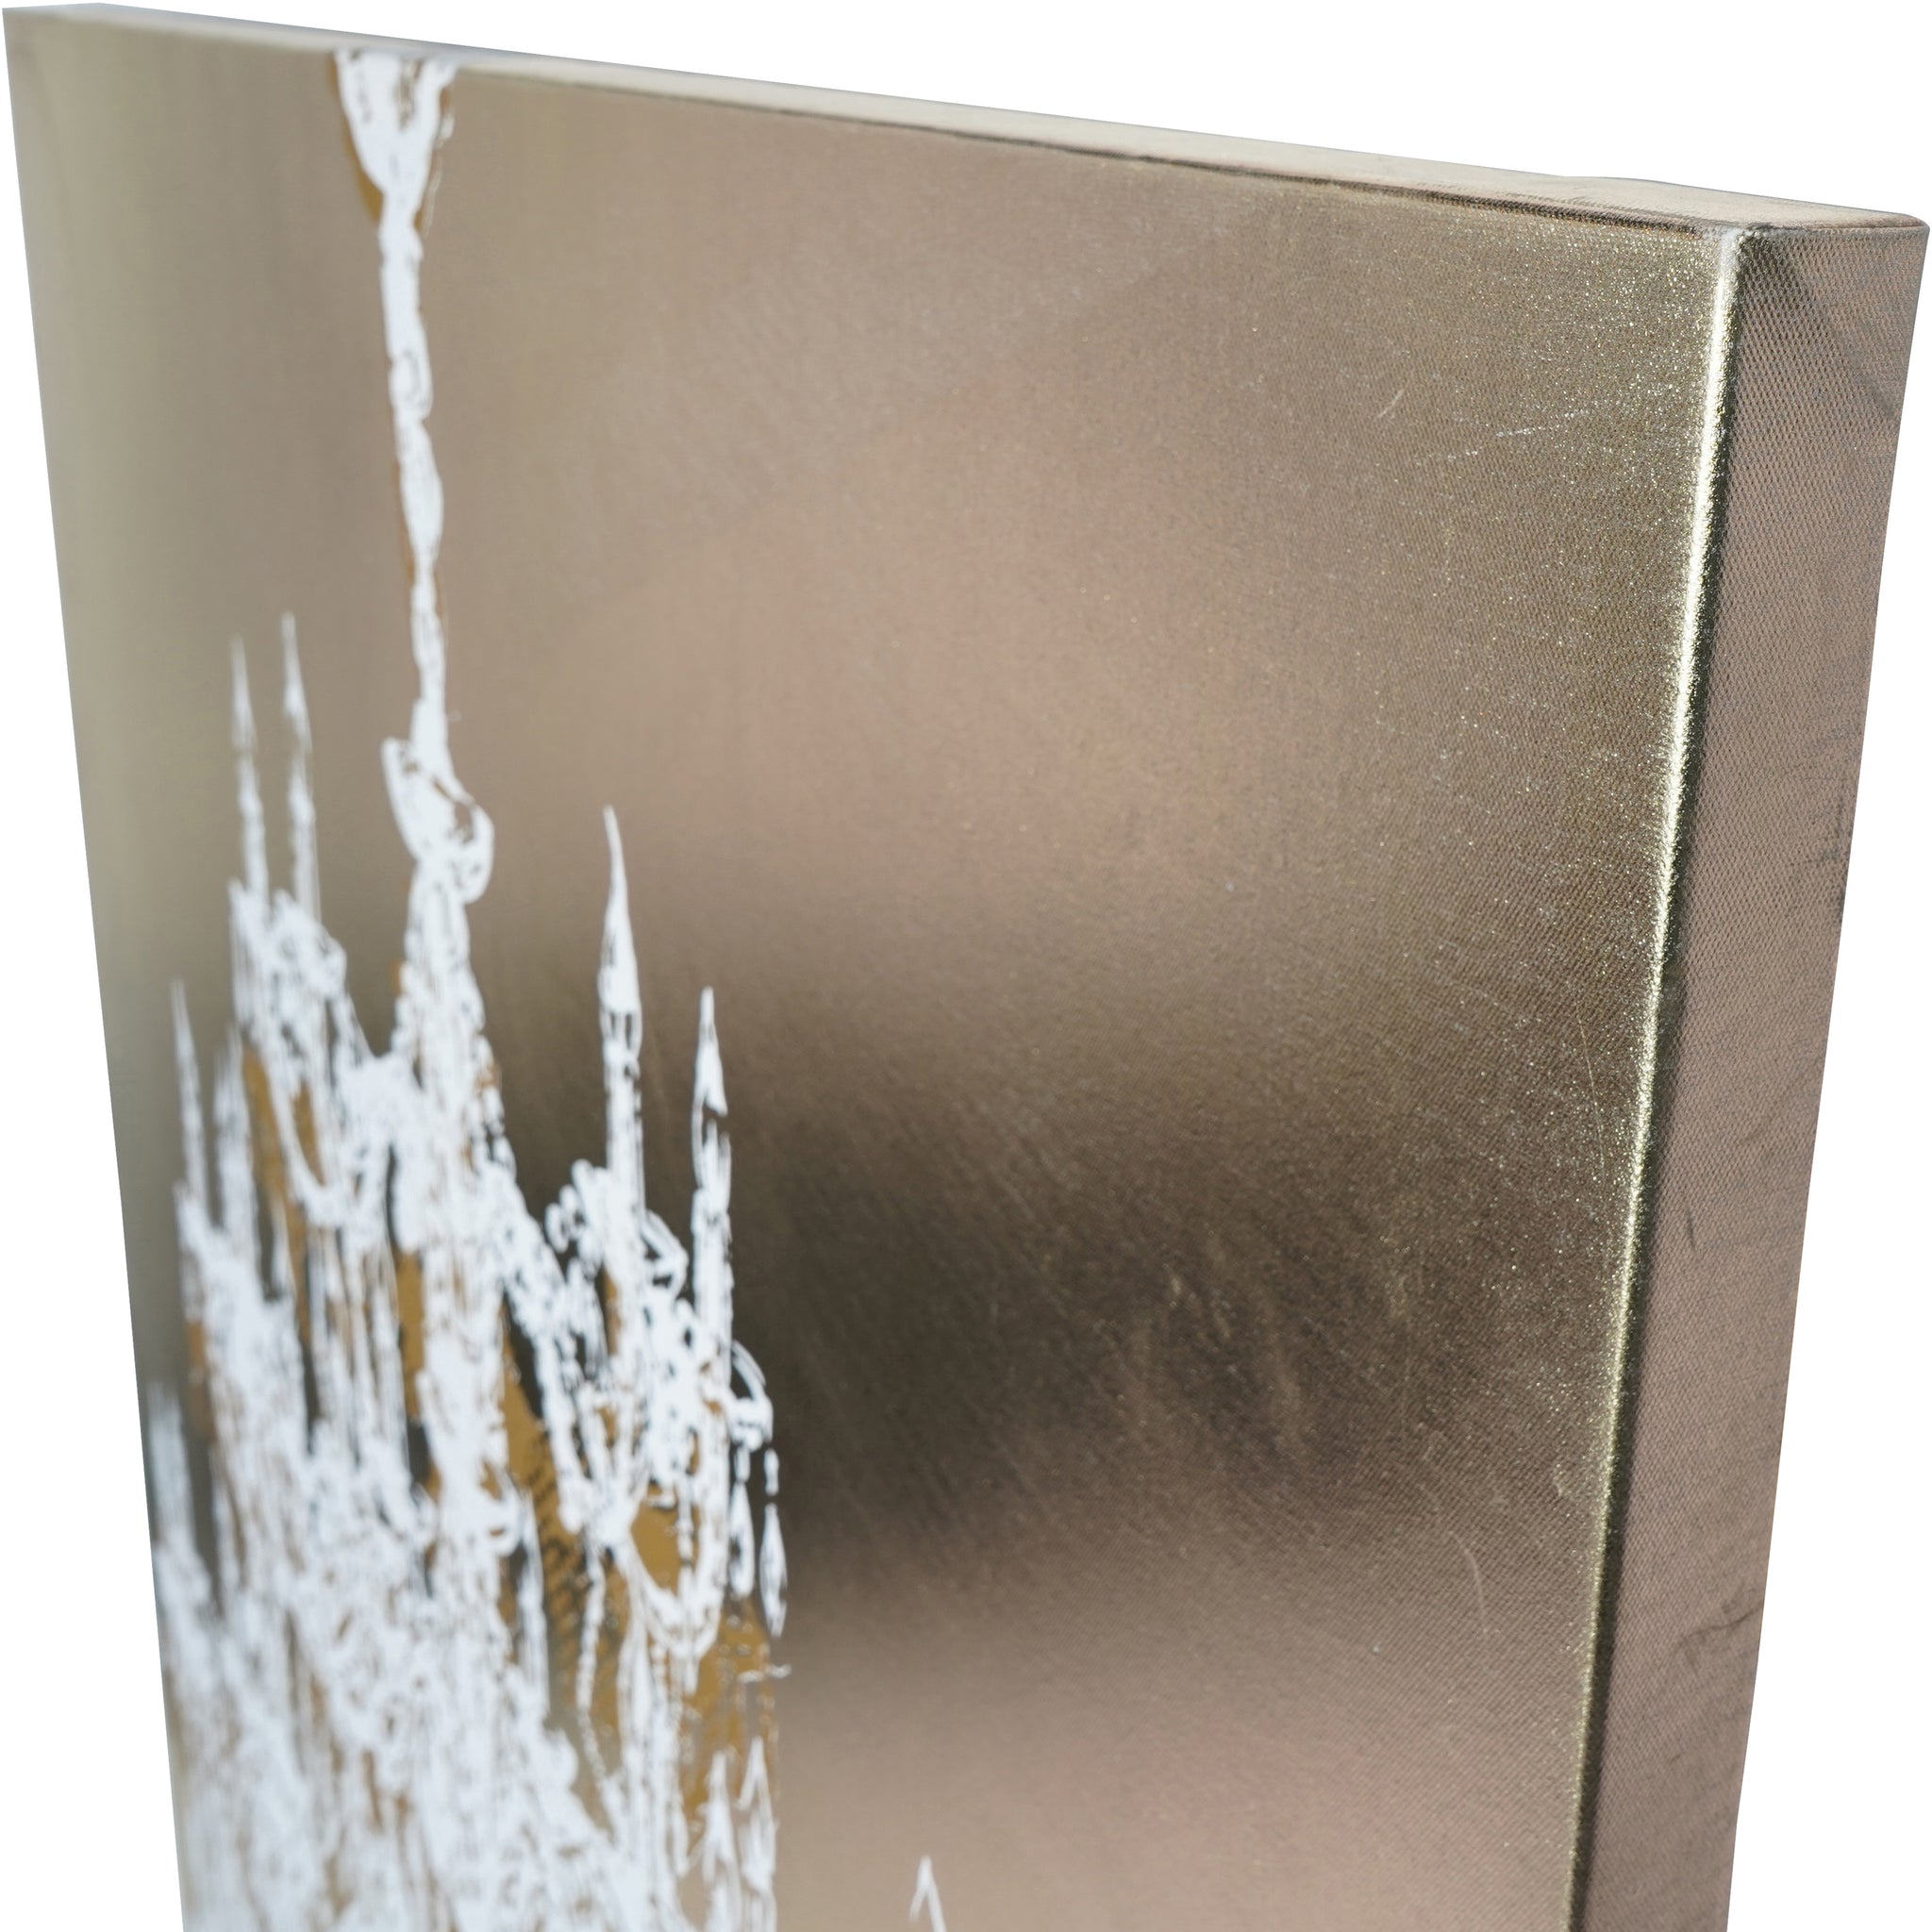 Chandelier Gold Foiled Canvas 140x100cm